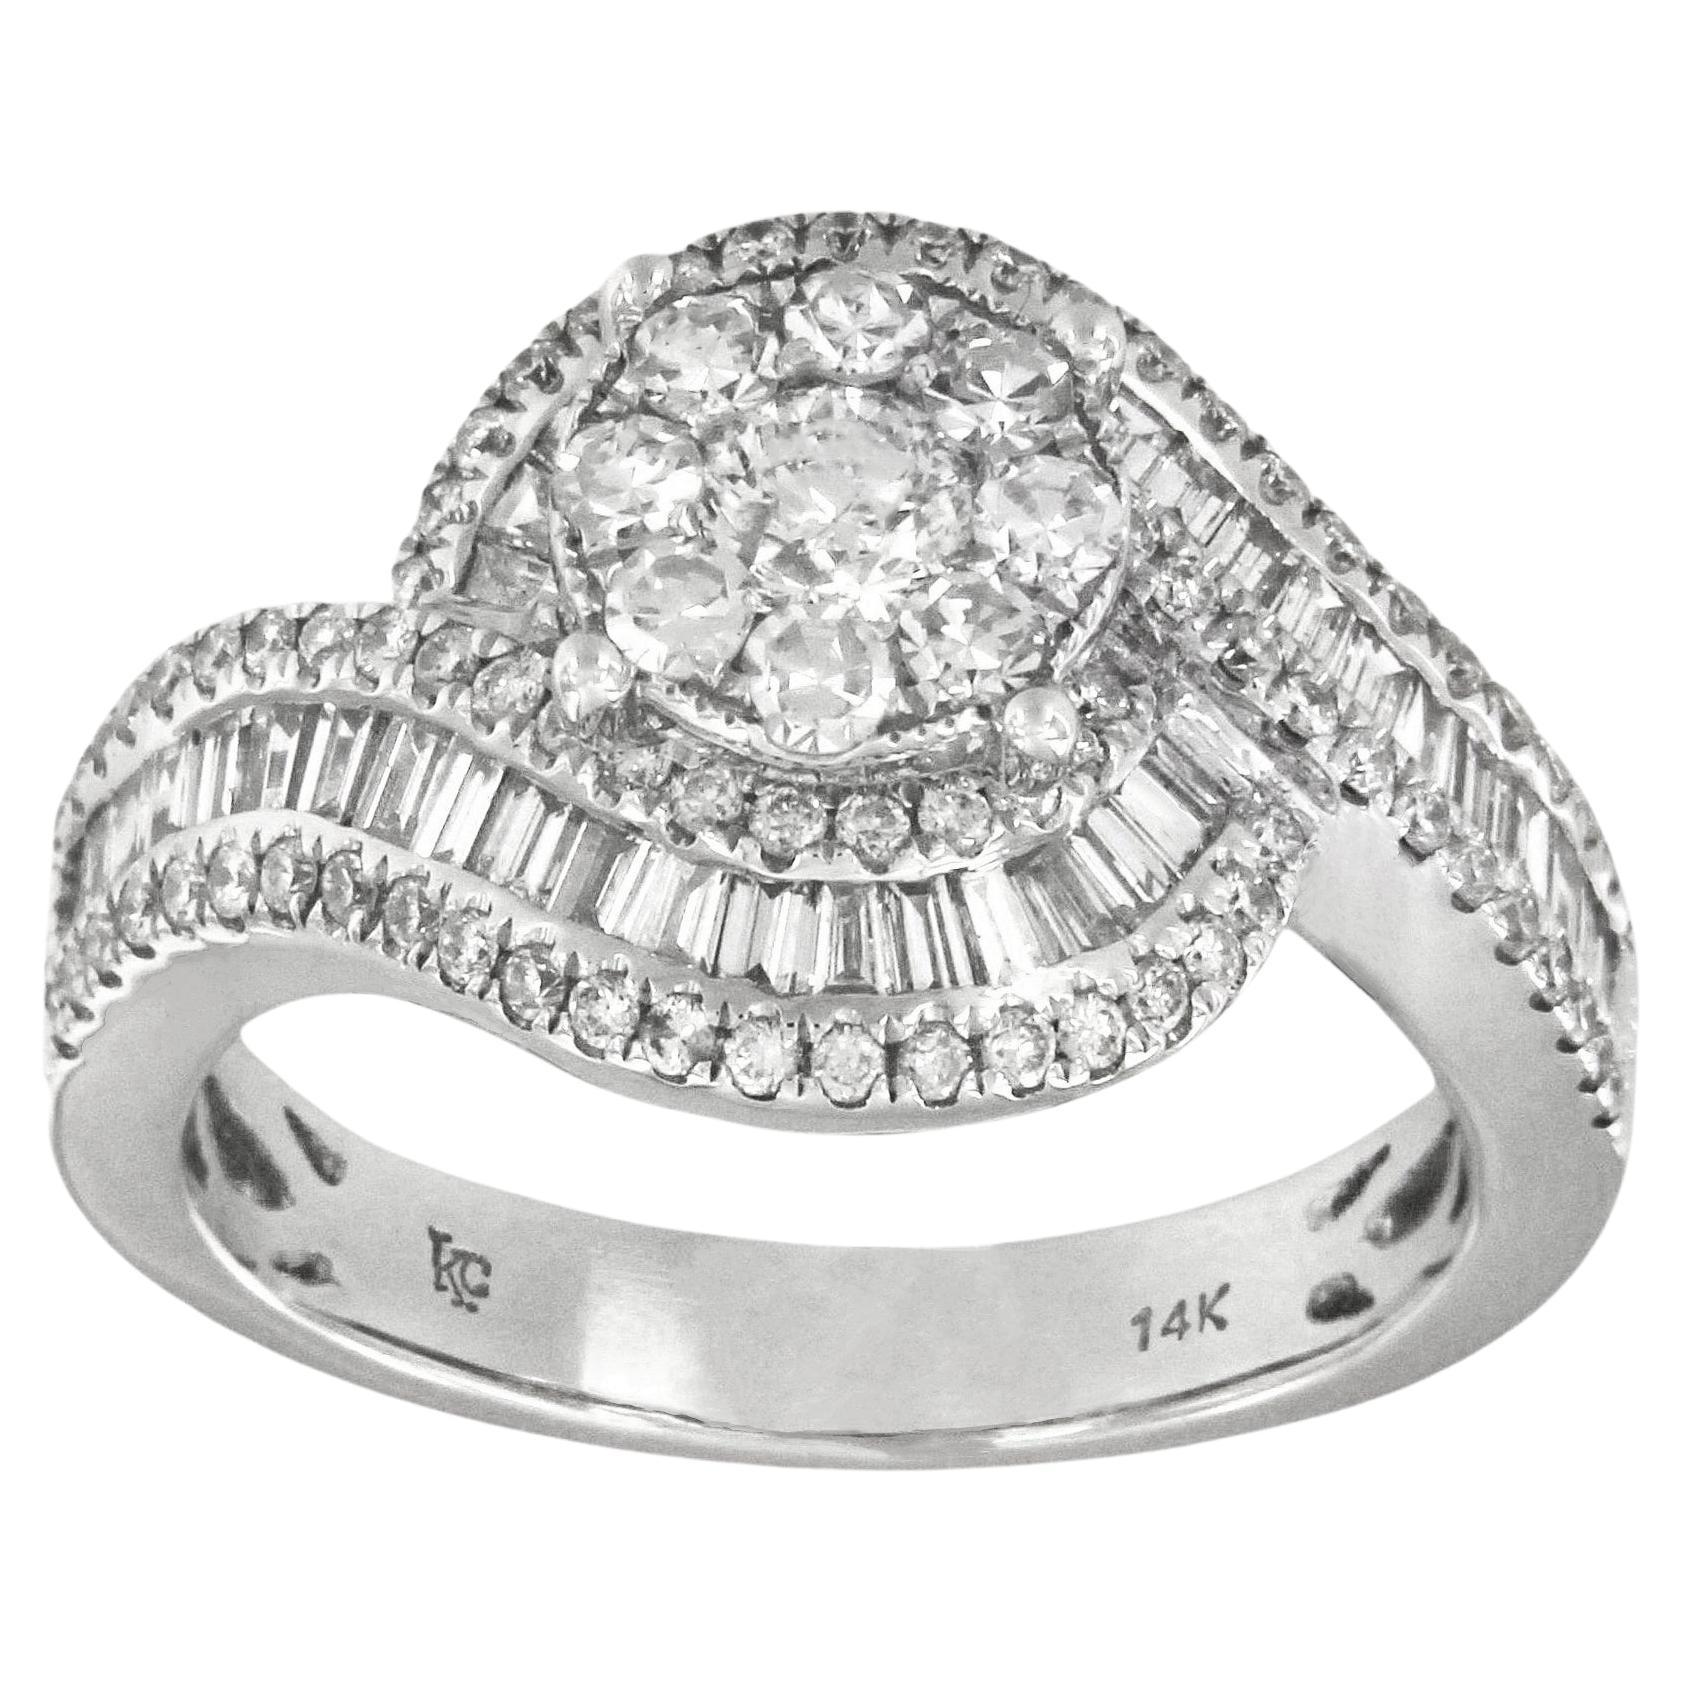 Unique Diamond Ring in 14k White Gold